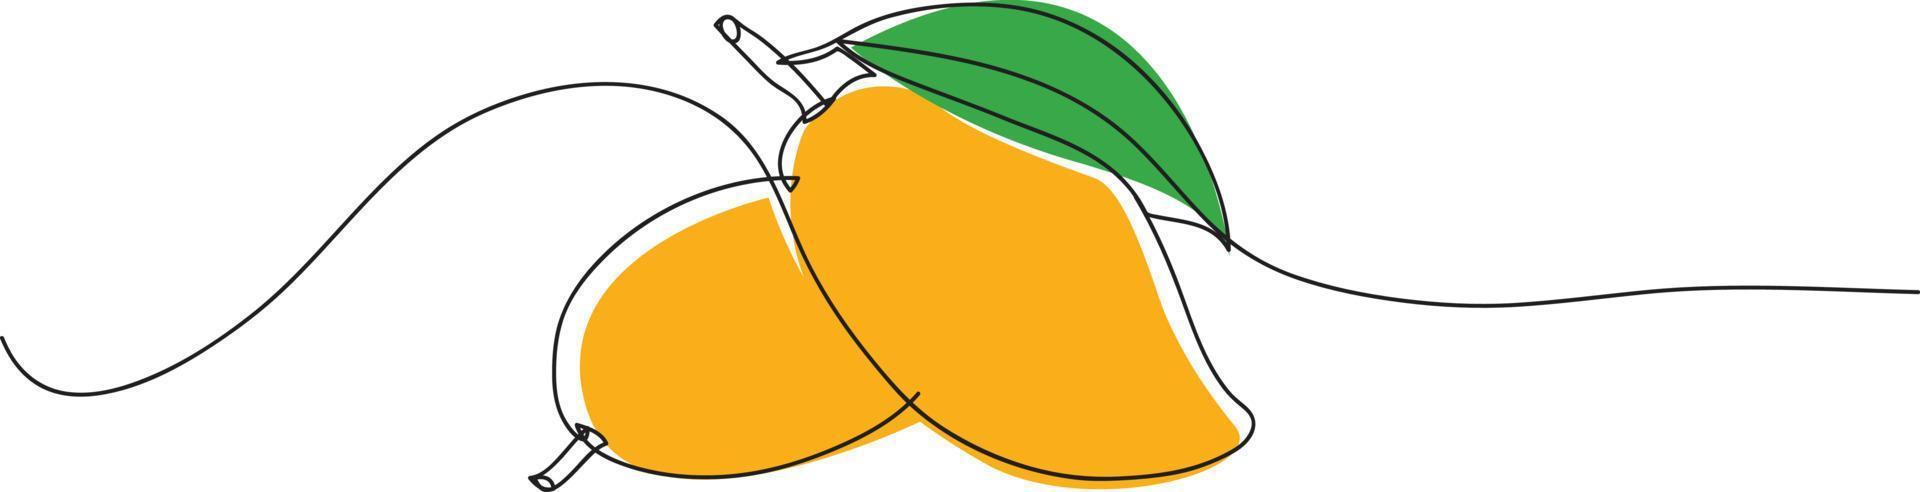 mango lijn tekening vector illustratie.